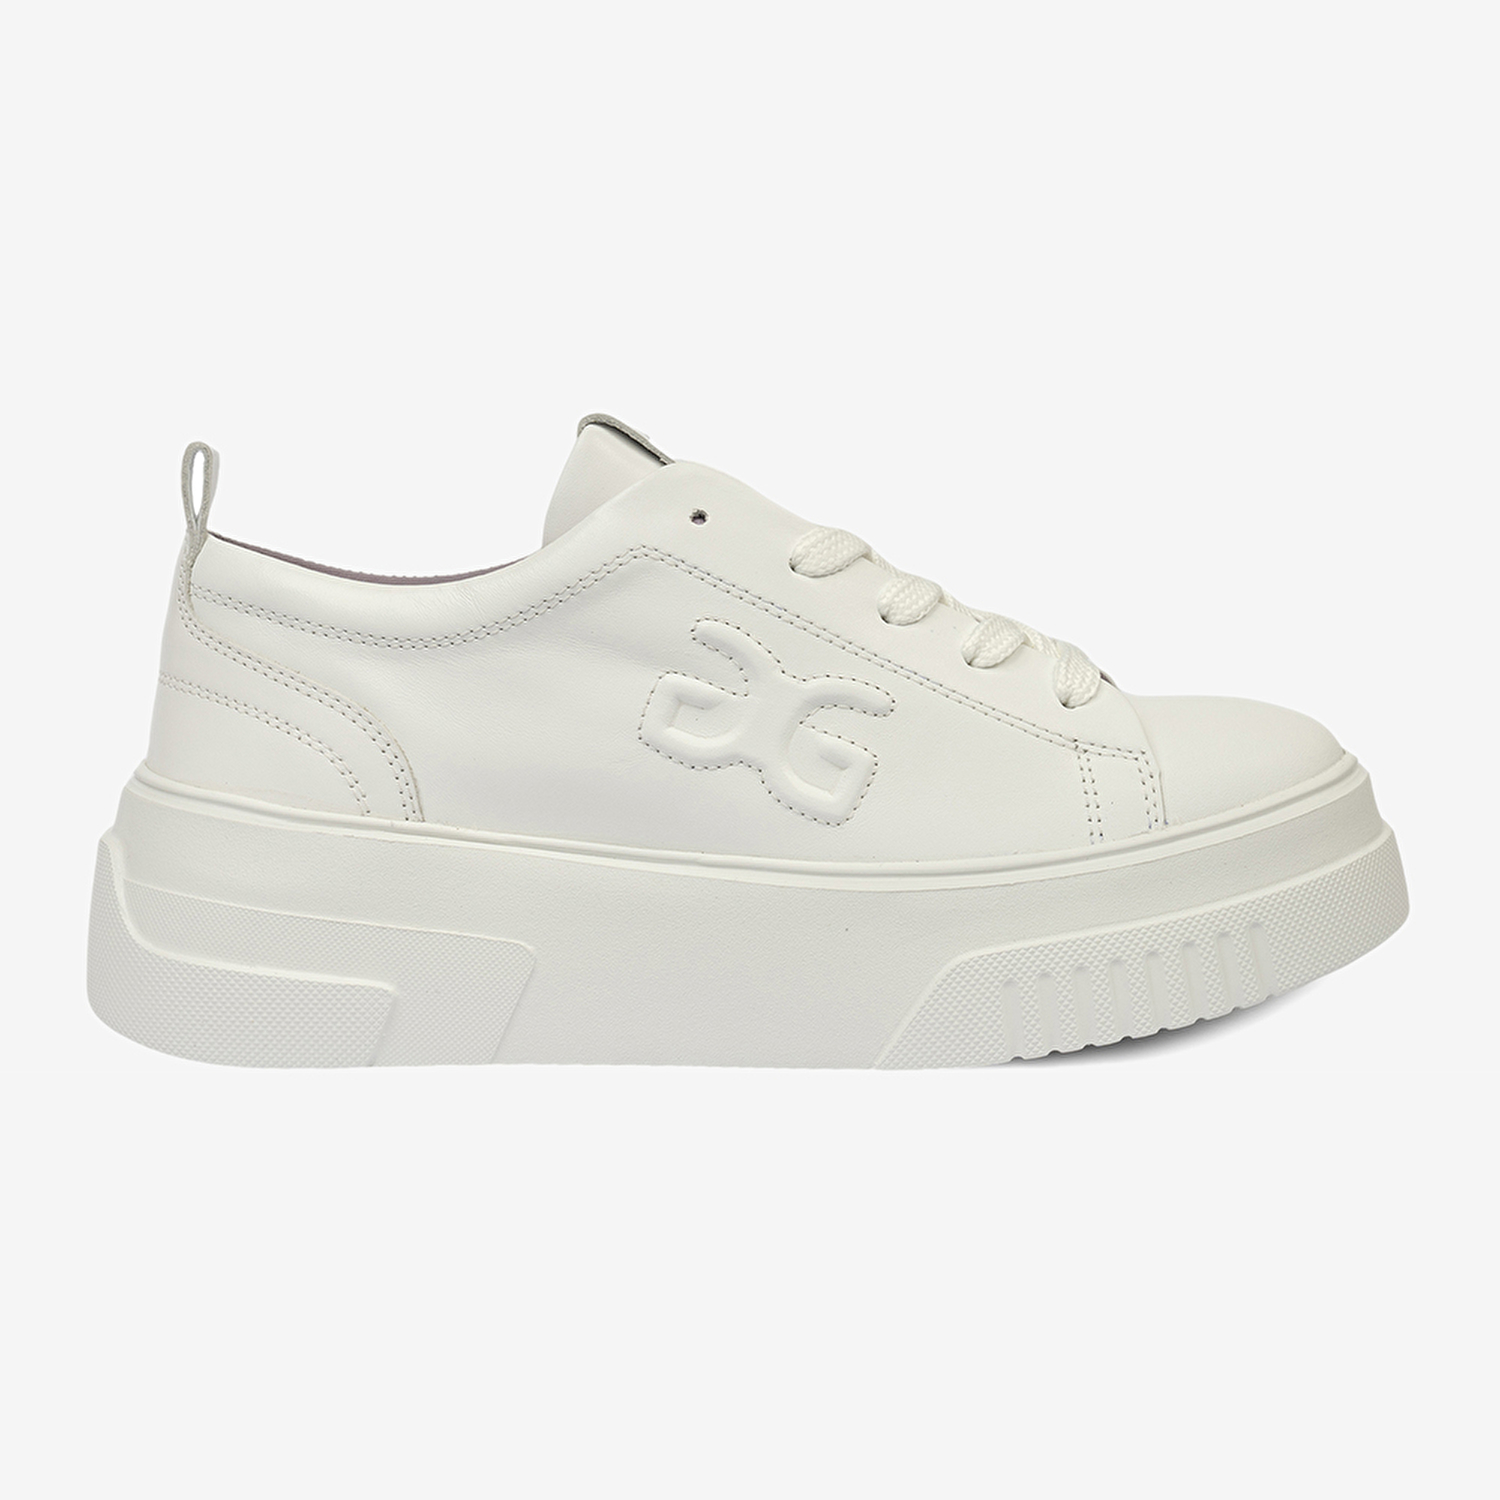 Kadın Beyaz Hakiki Deri Sneaker Ayakkabı 4Y2SA33710-2